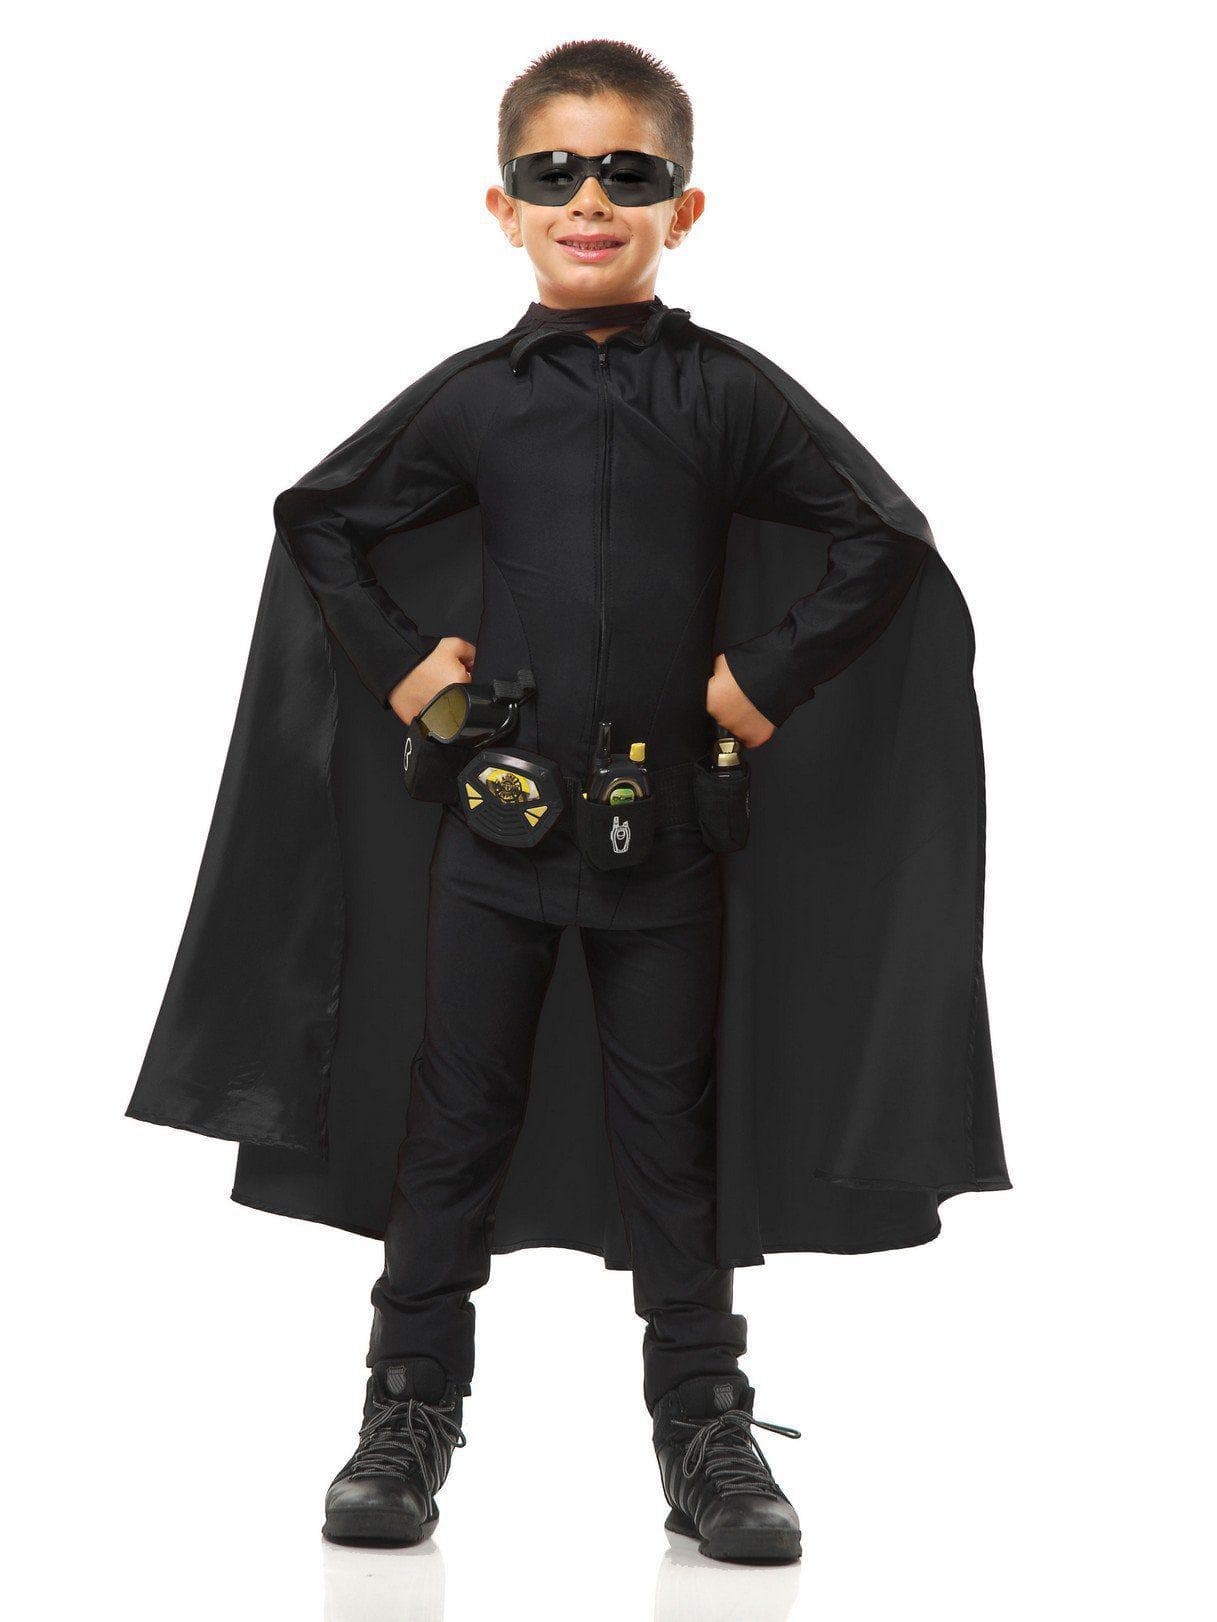 Kid's Super Hero Cape Black Costume - costumes.com